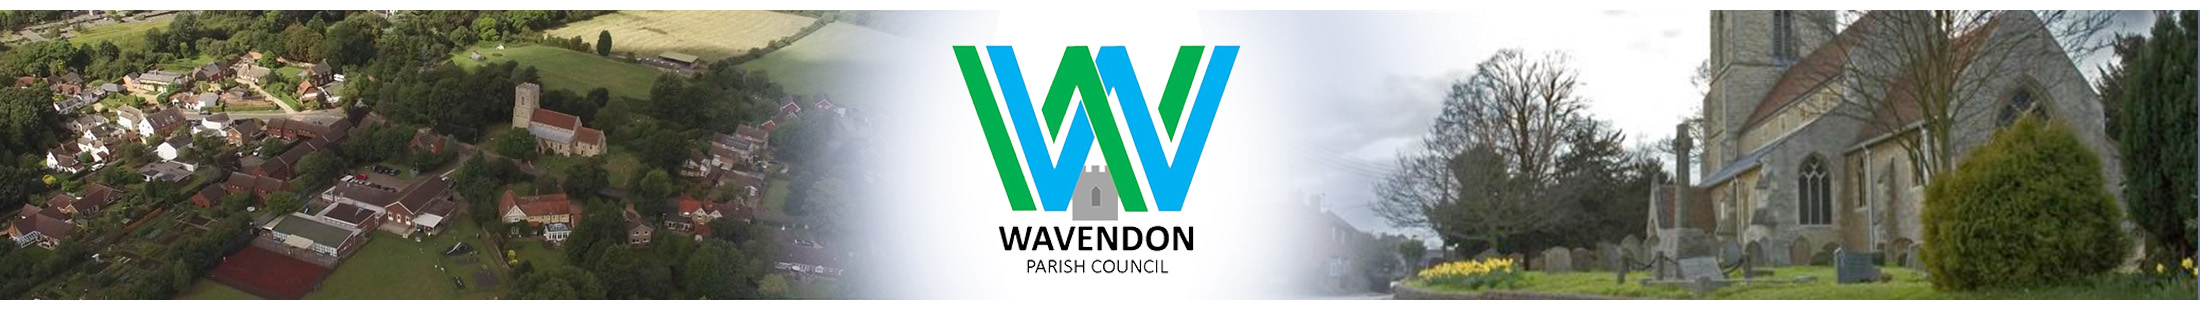 Header Image for Wavendon Parish Council